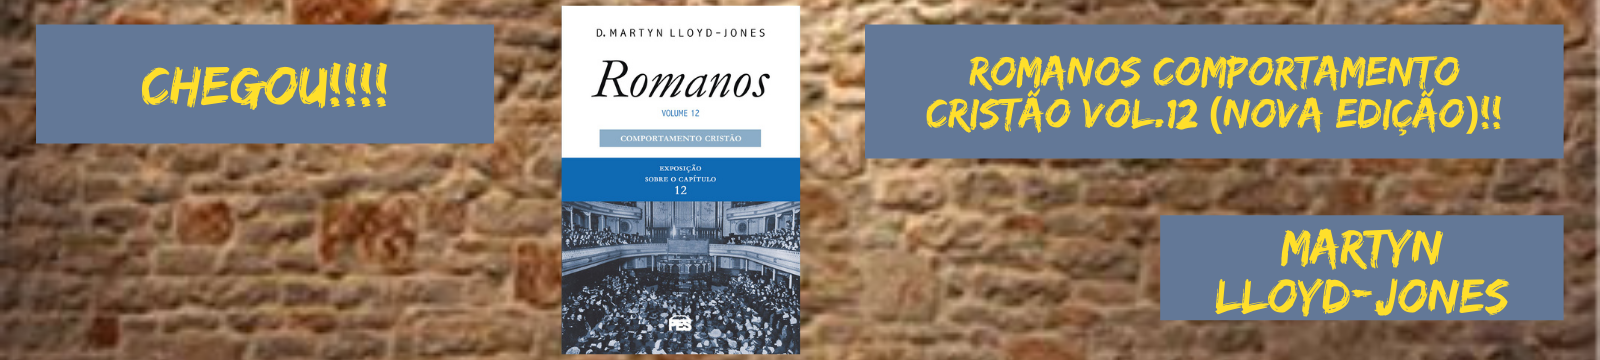 ROMANOS COMPORTAMENTO CRISTÃO VOL.12 (Nova Edição)!!